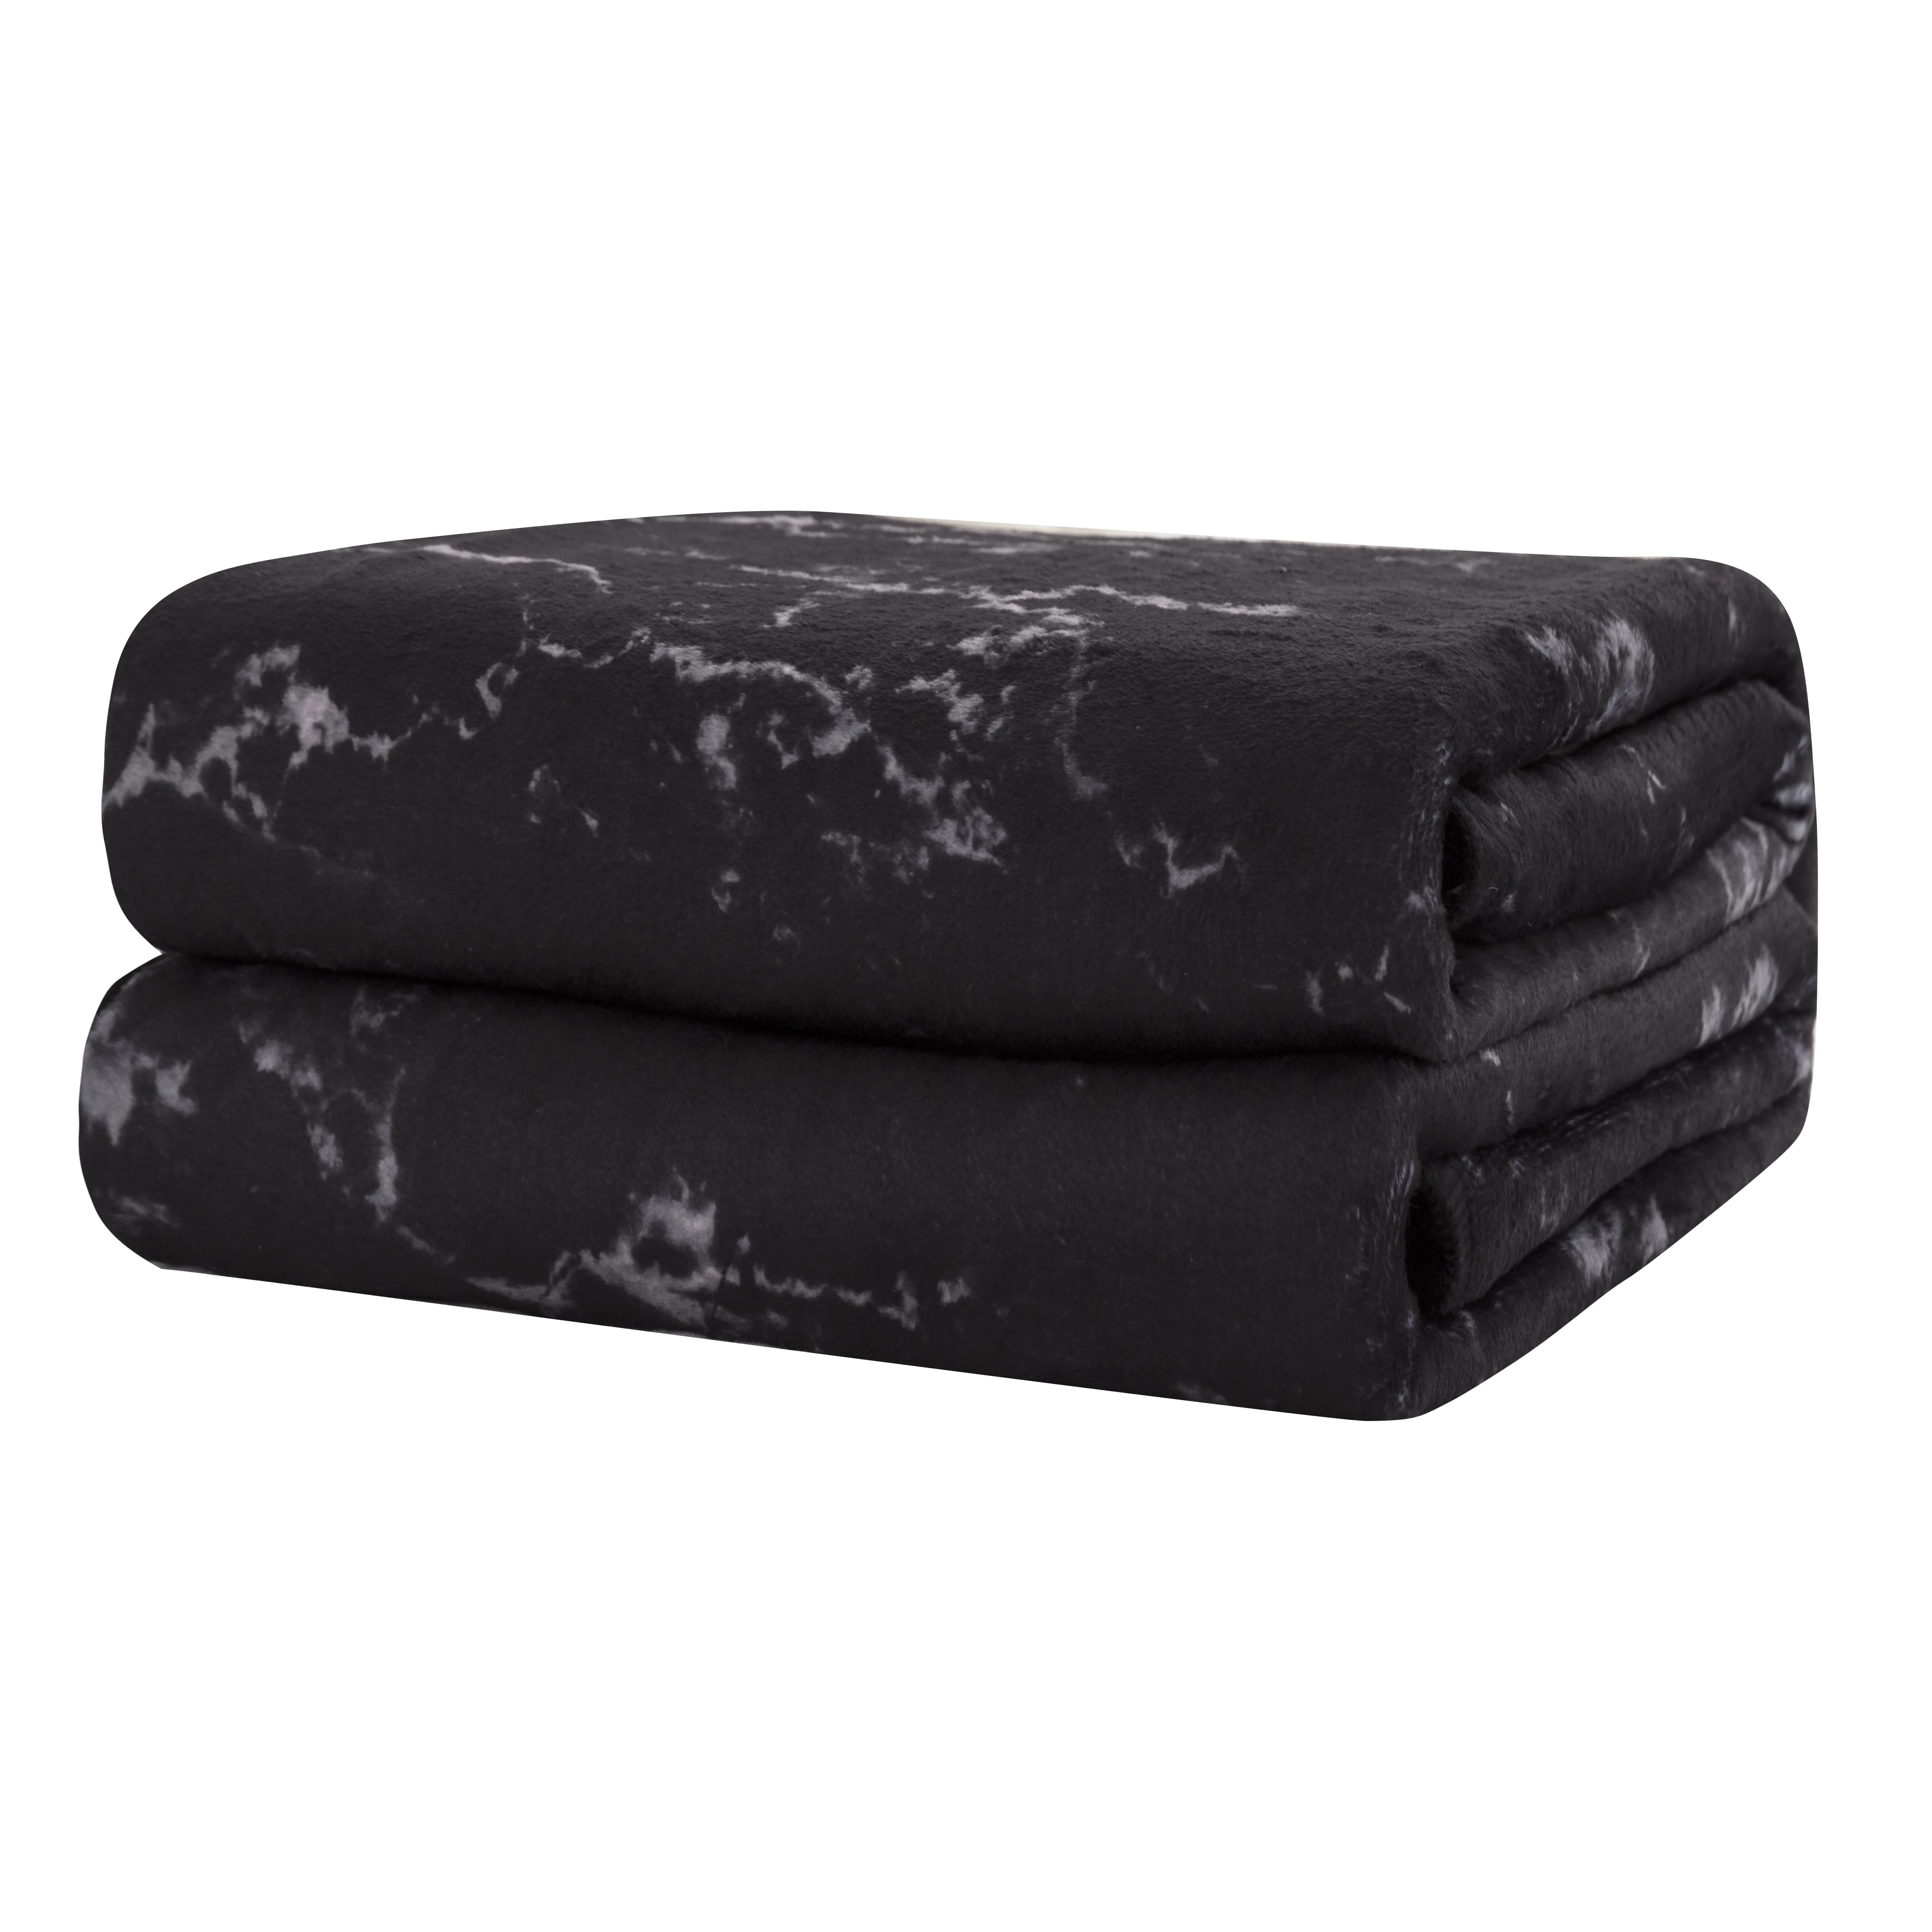 Роскошное Мраморное одеяло, черно-белое и серое, с современным рисунком, из мягкой микрофибры